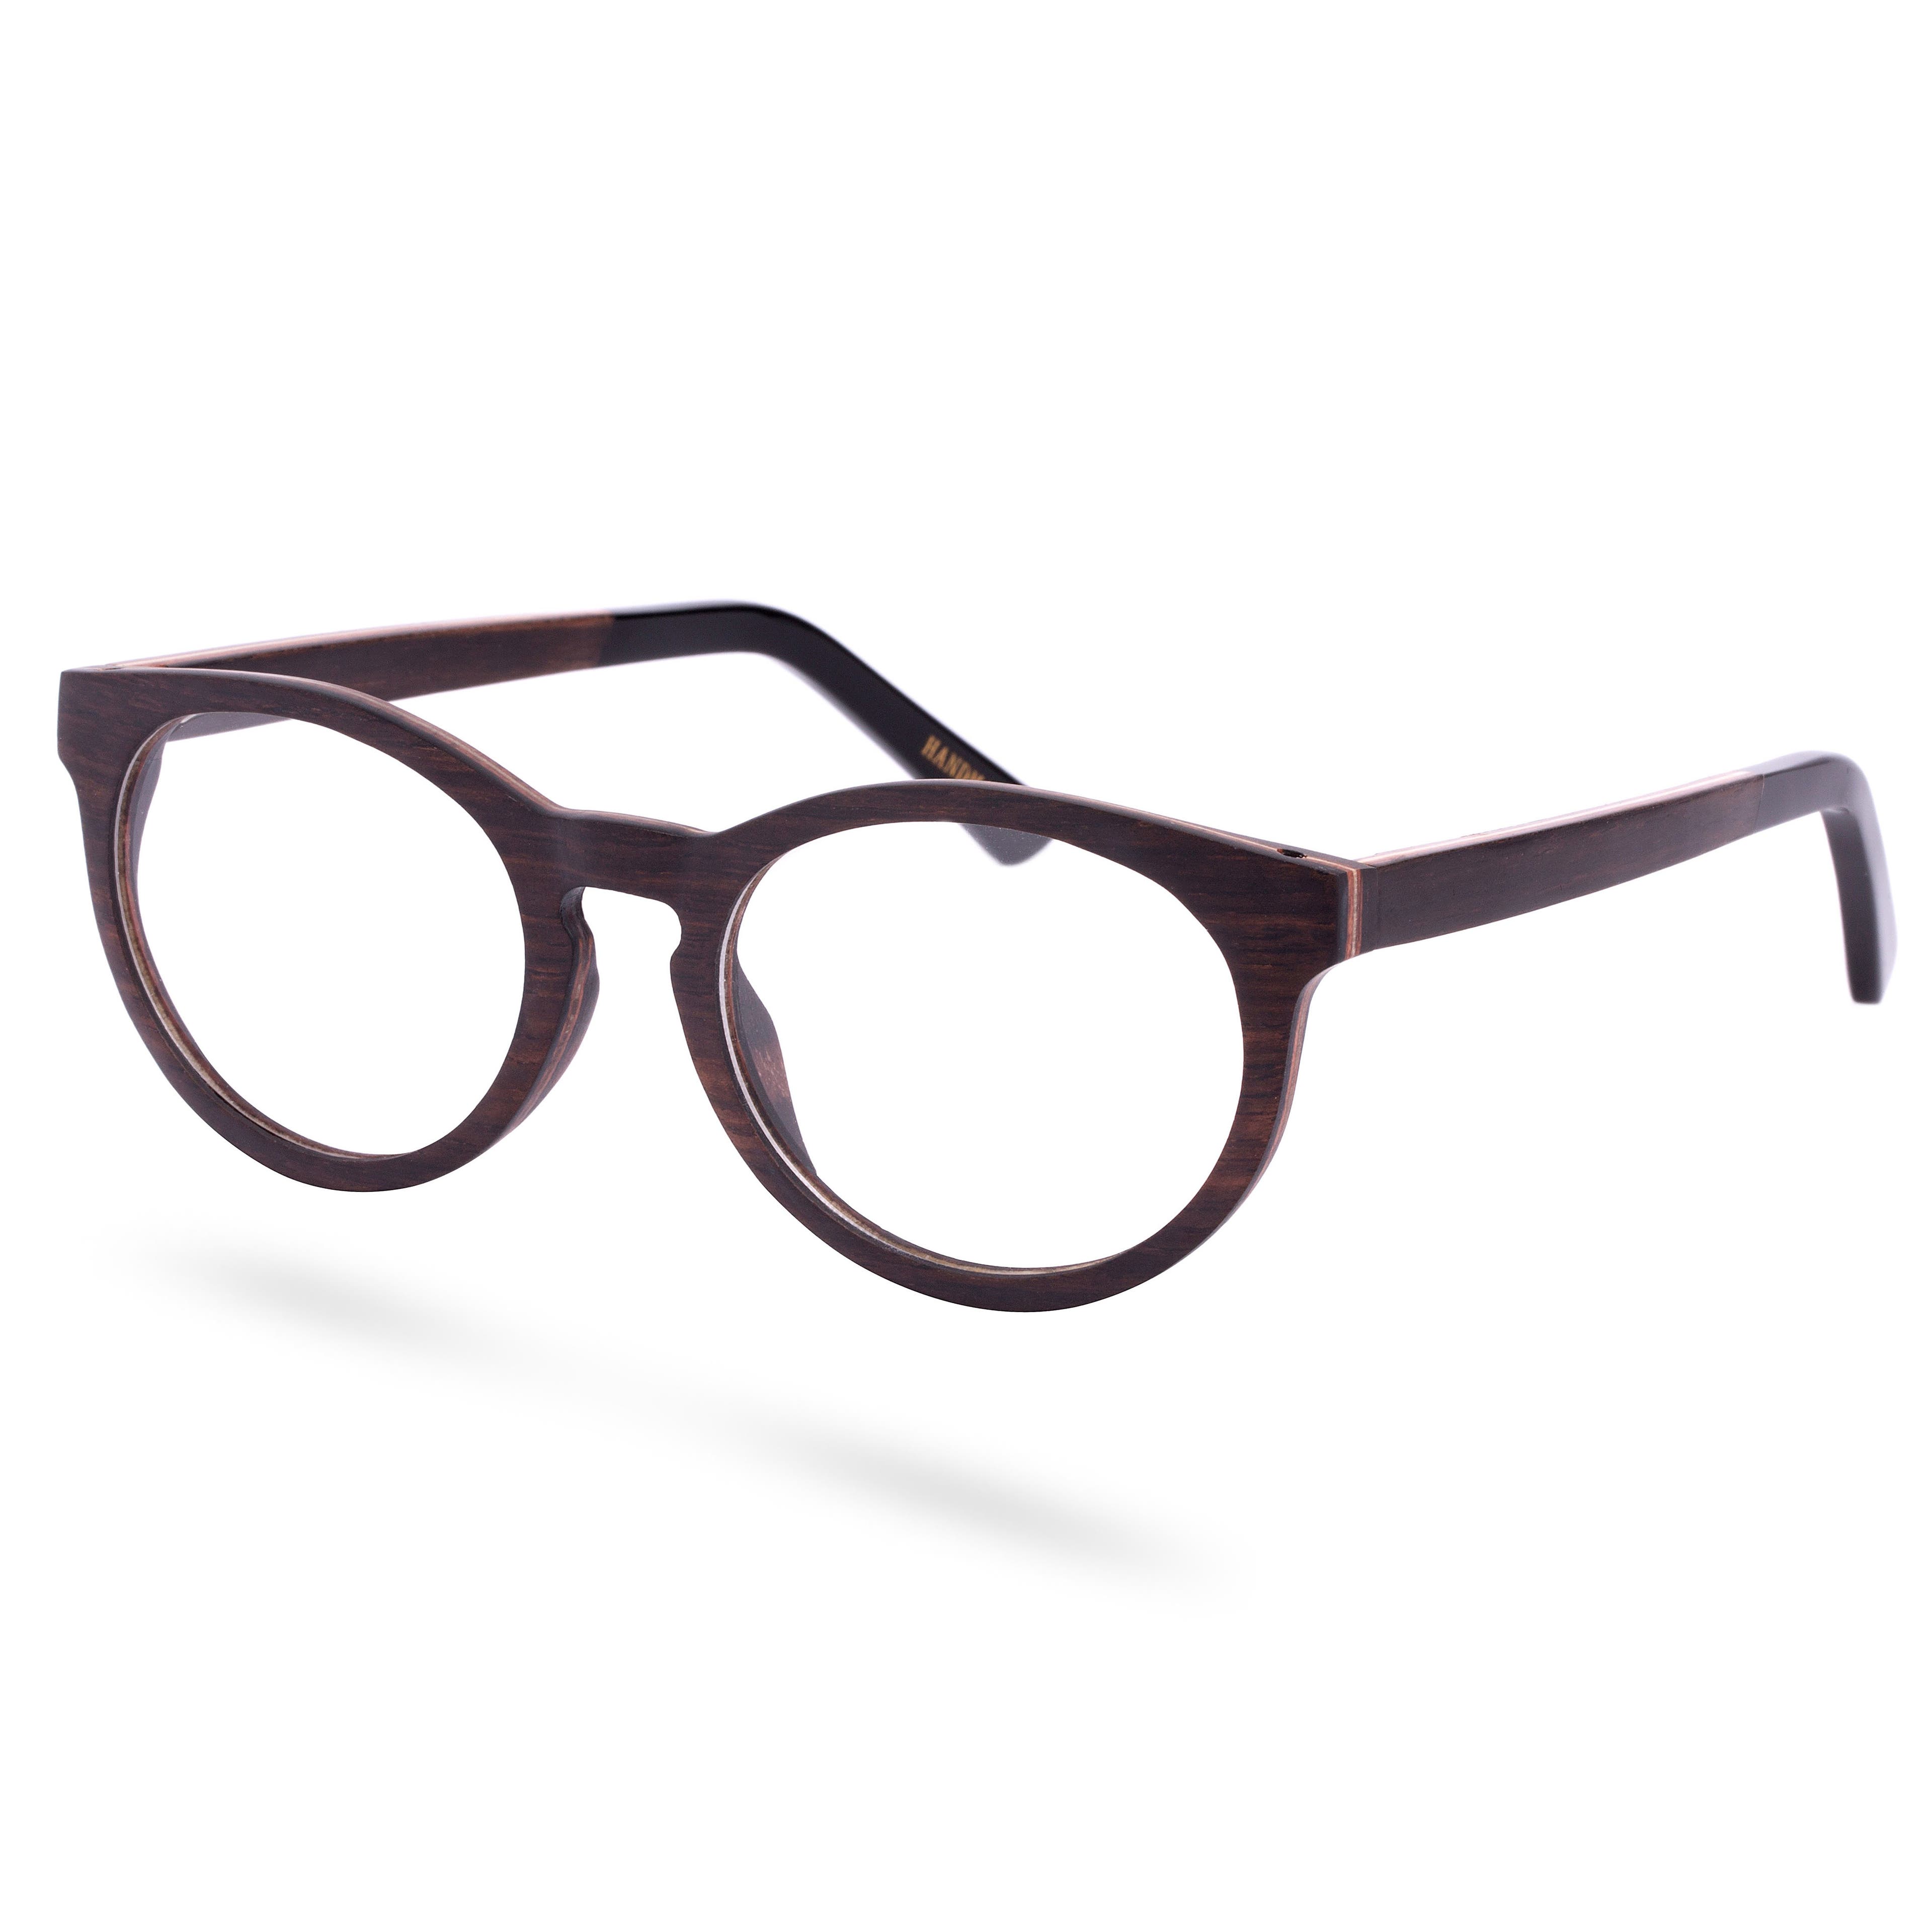 Ibenholtsbriller med Klare Glass